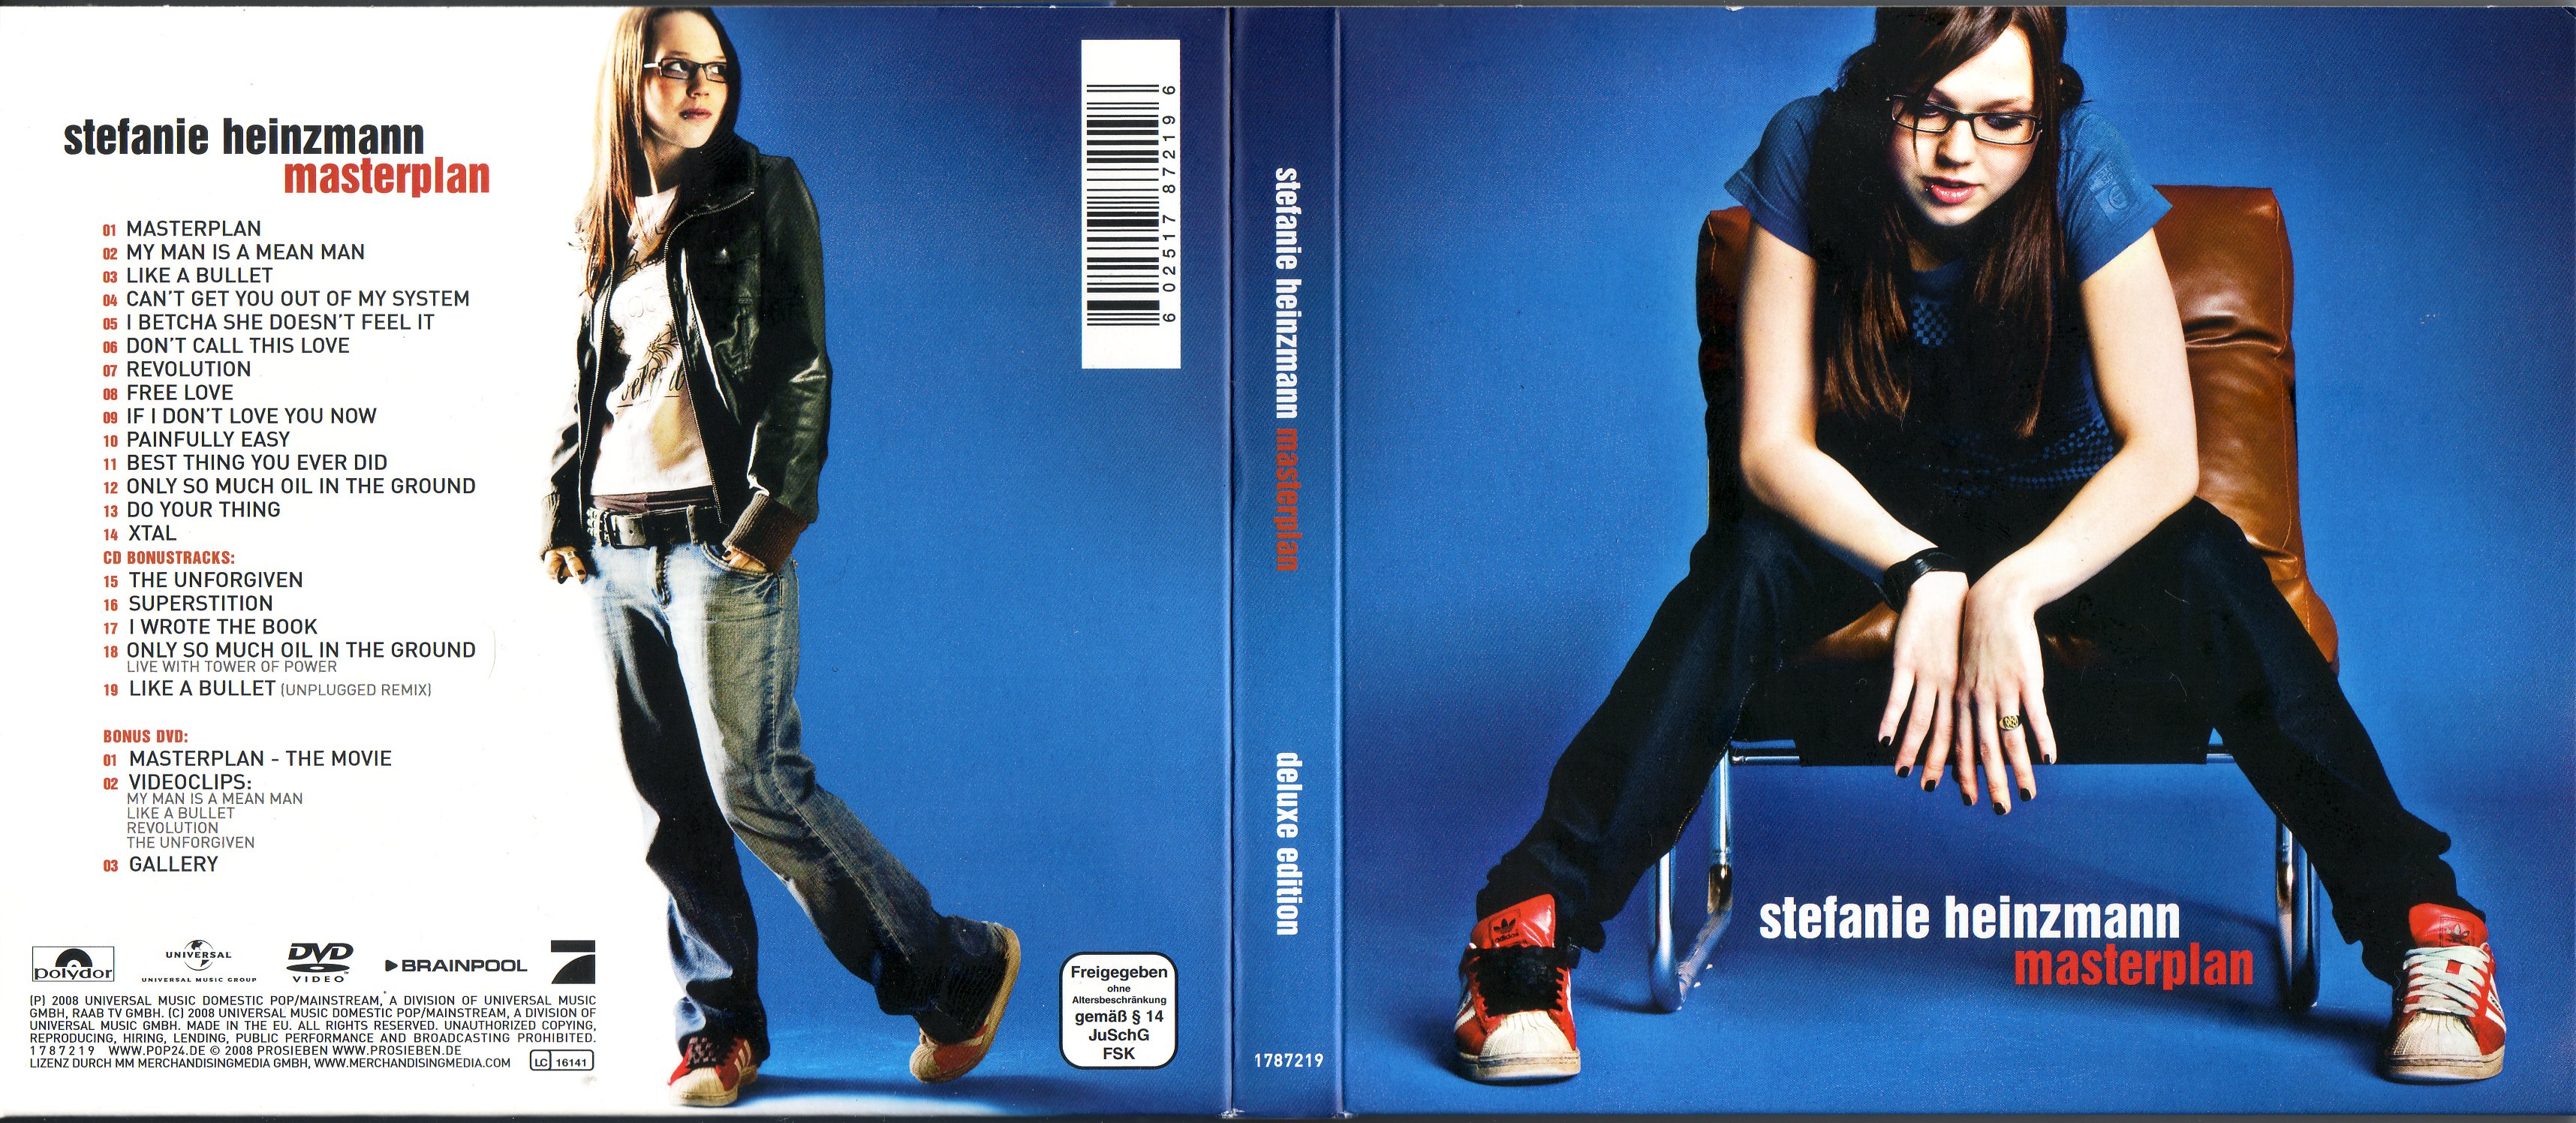 Masterplan_Limited_Deluxe_Edition - 00-stefanie_heinzmann_-_masterplan_limited_deluxe_edition-de-2008-cover.jpg